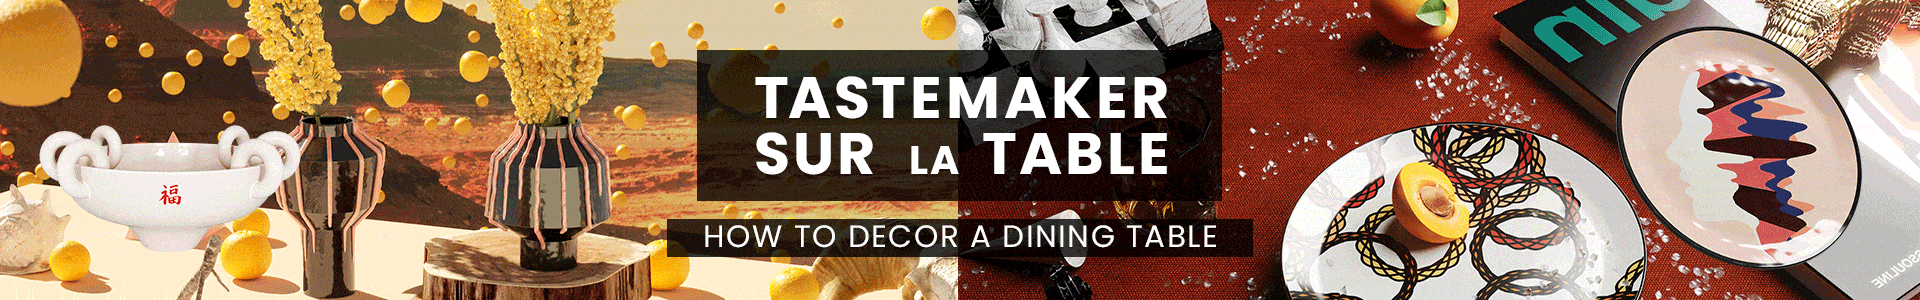 Tastemaker Sur La Table